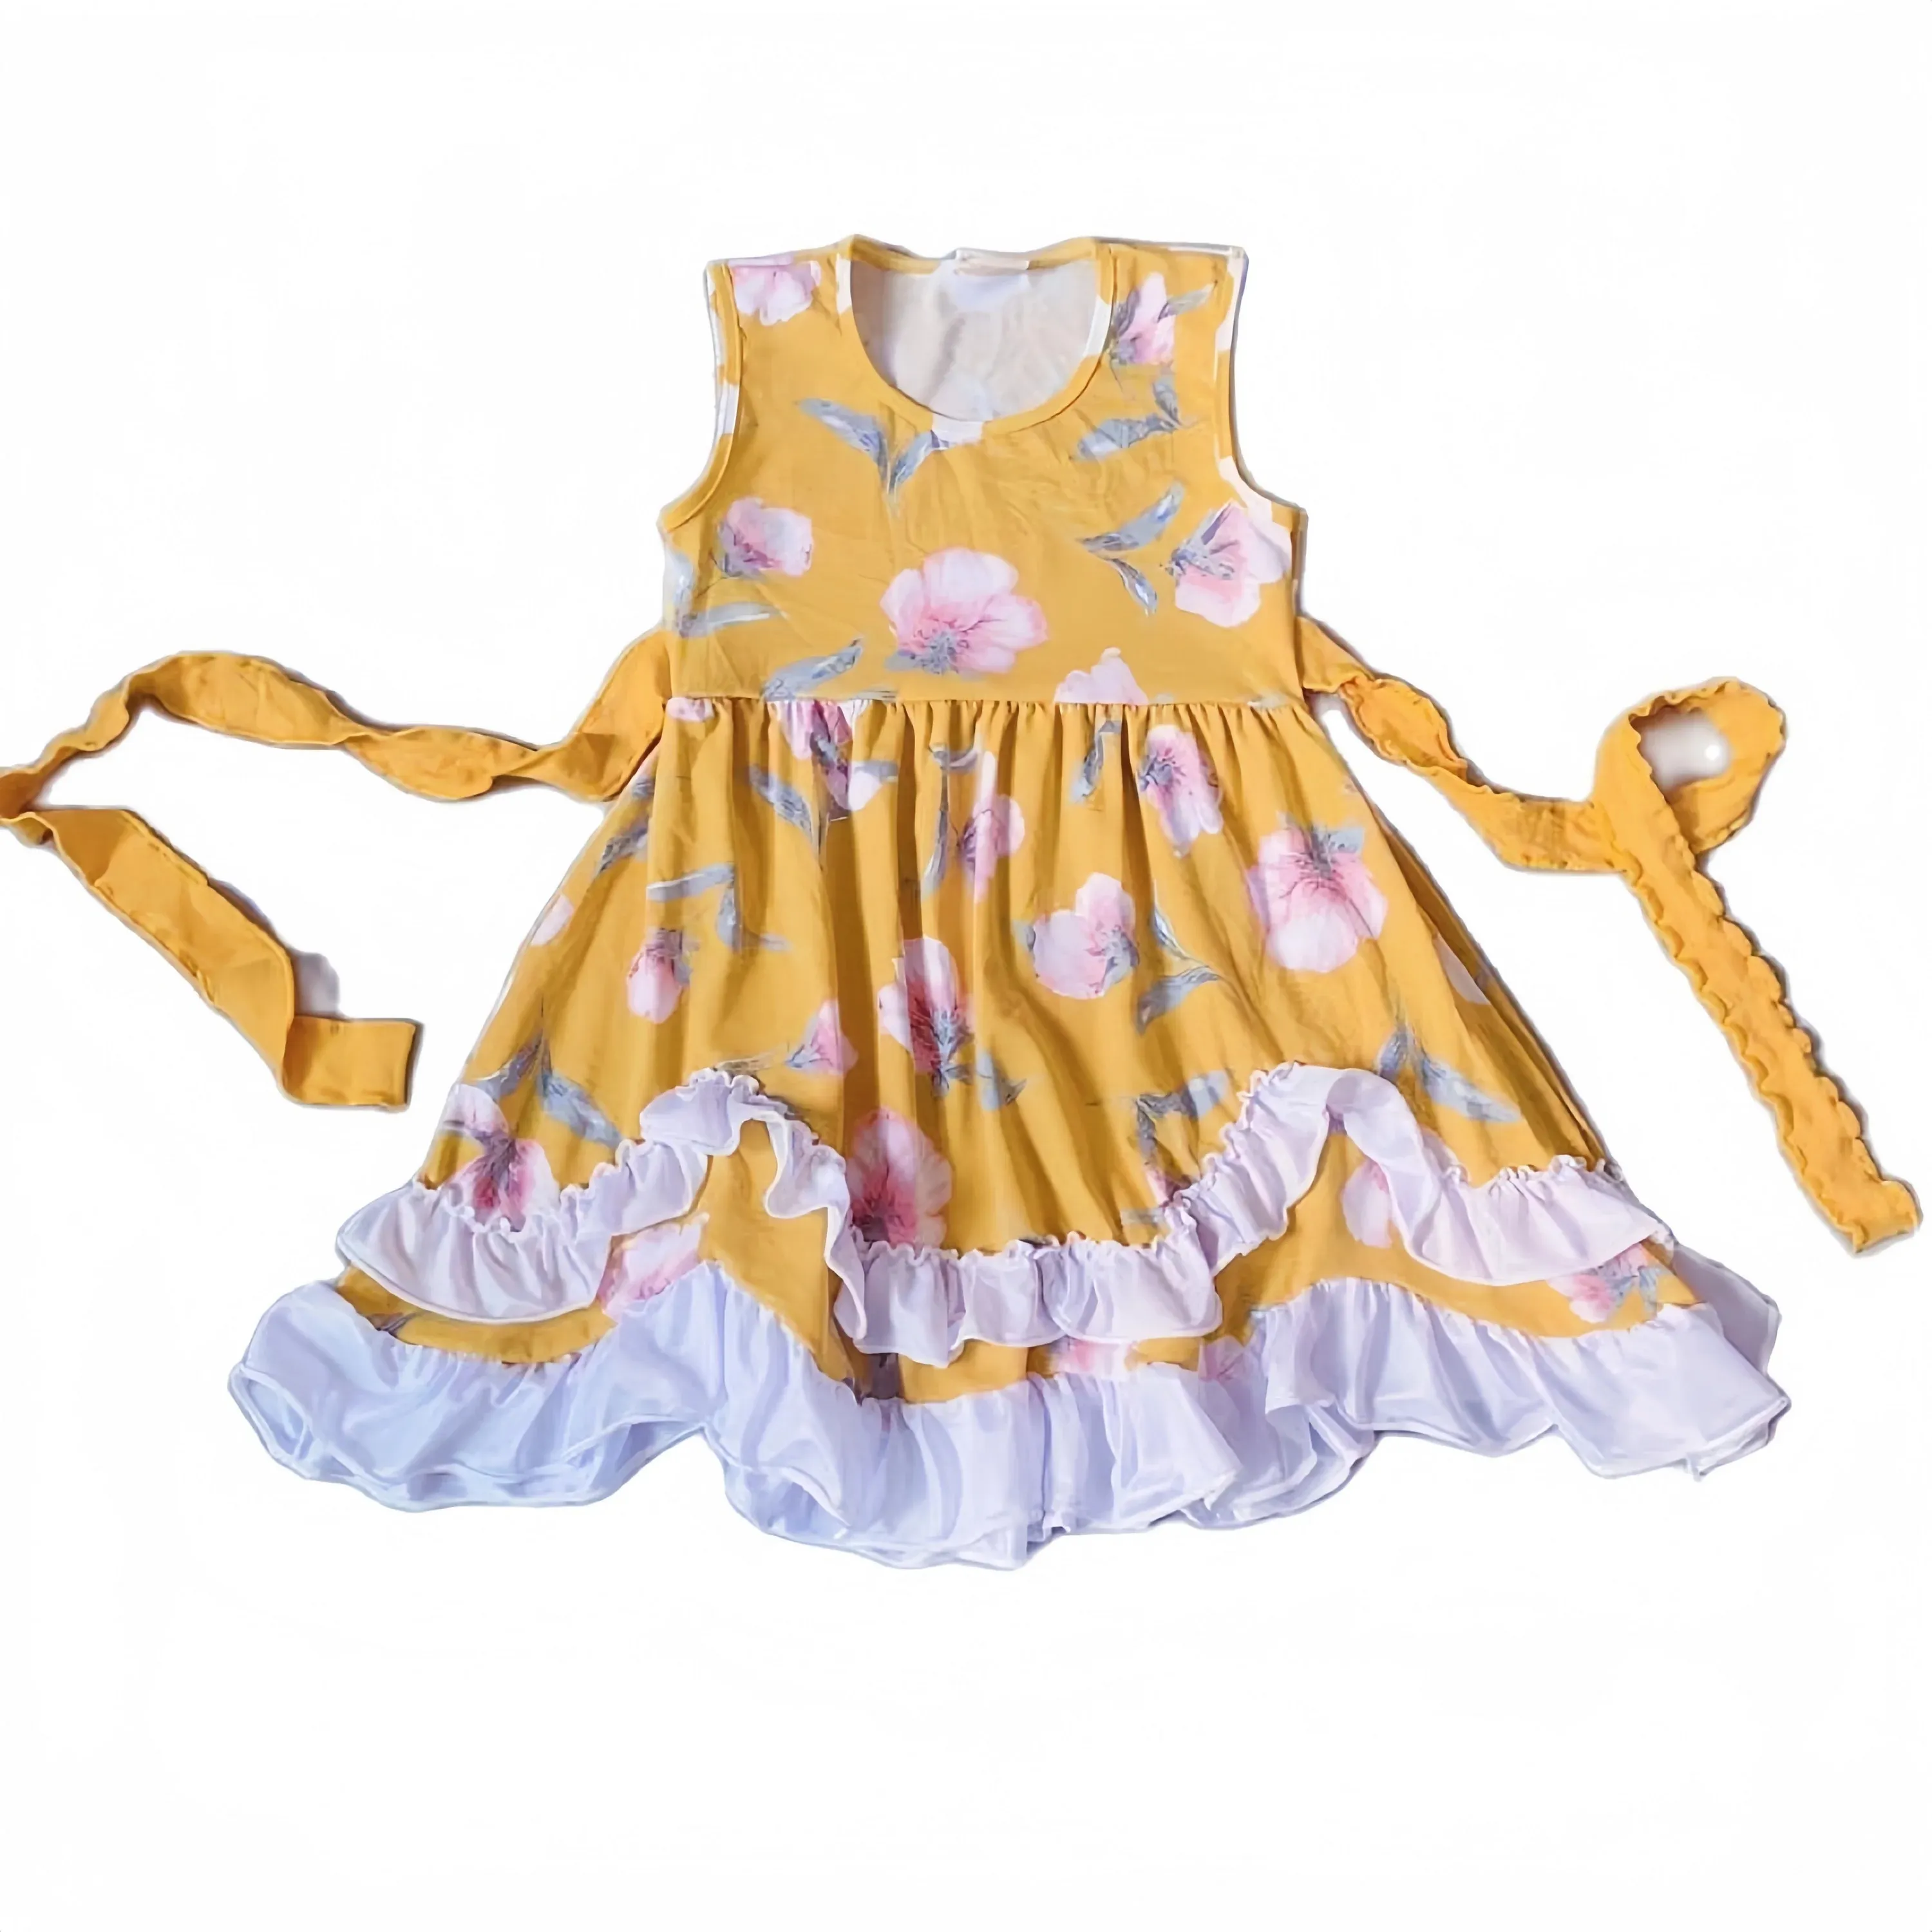 فستان بناتي صيفي تصميم جديد للأطفال من القطن باللون الأصفر ومطرز بالزهور والدانتيل ذو لفة داكنة مع حزام خصر